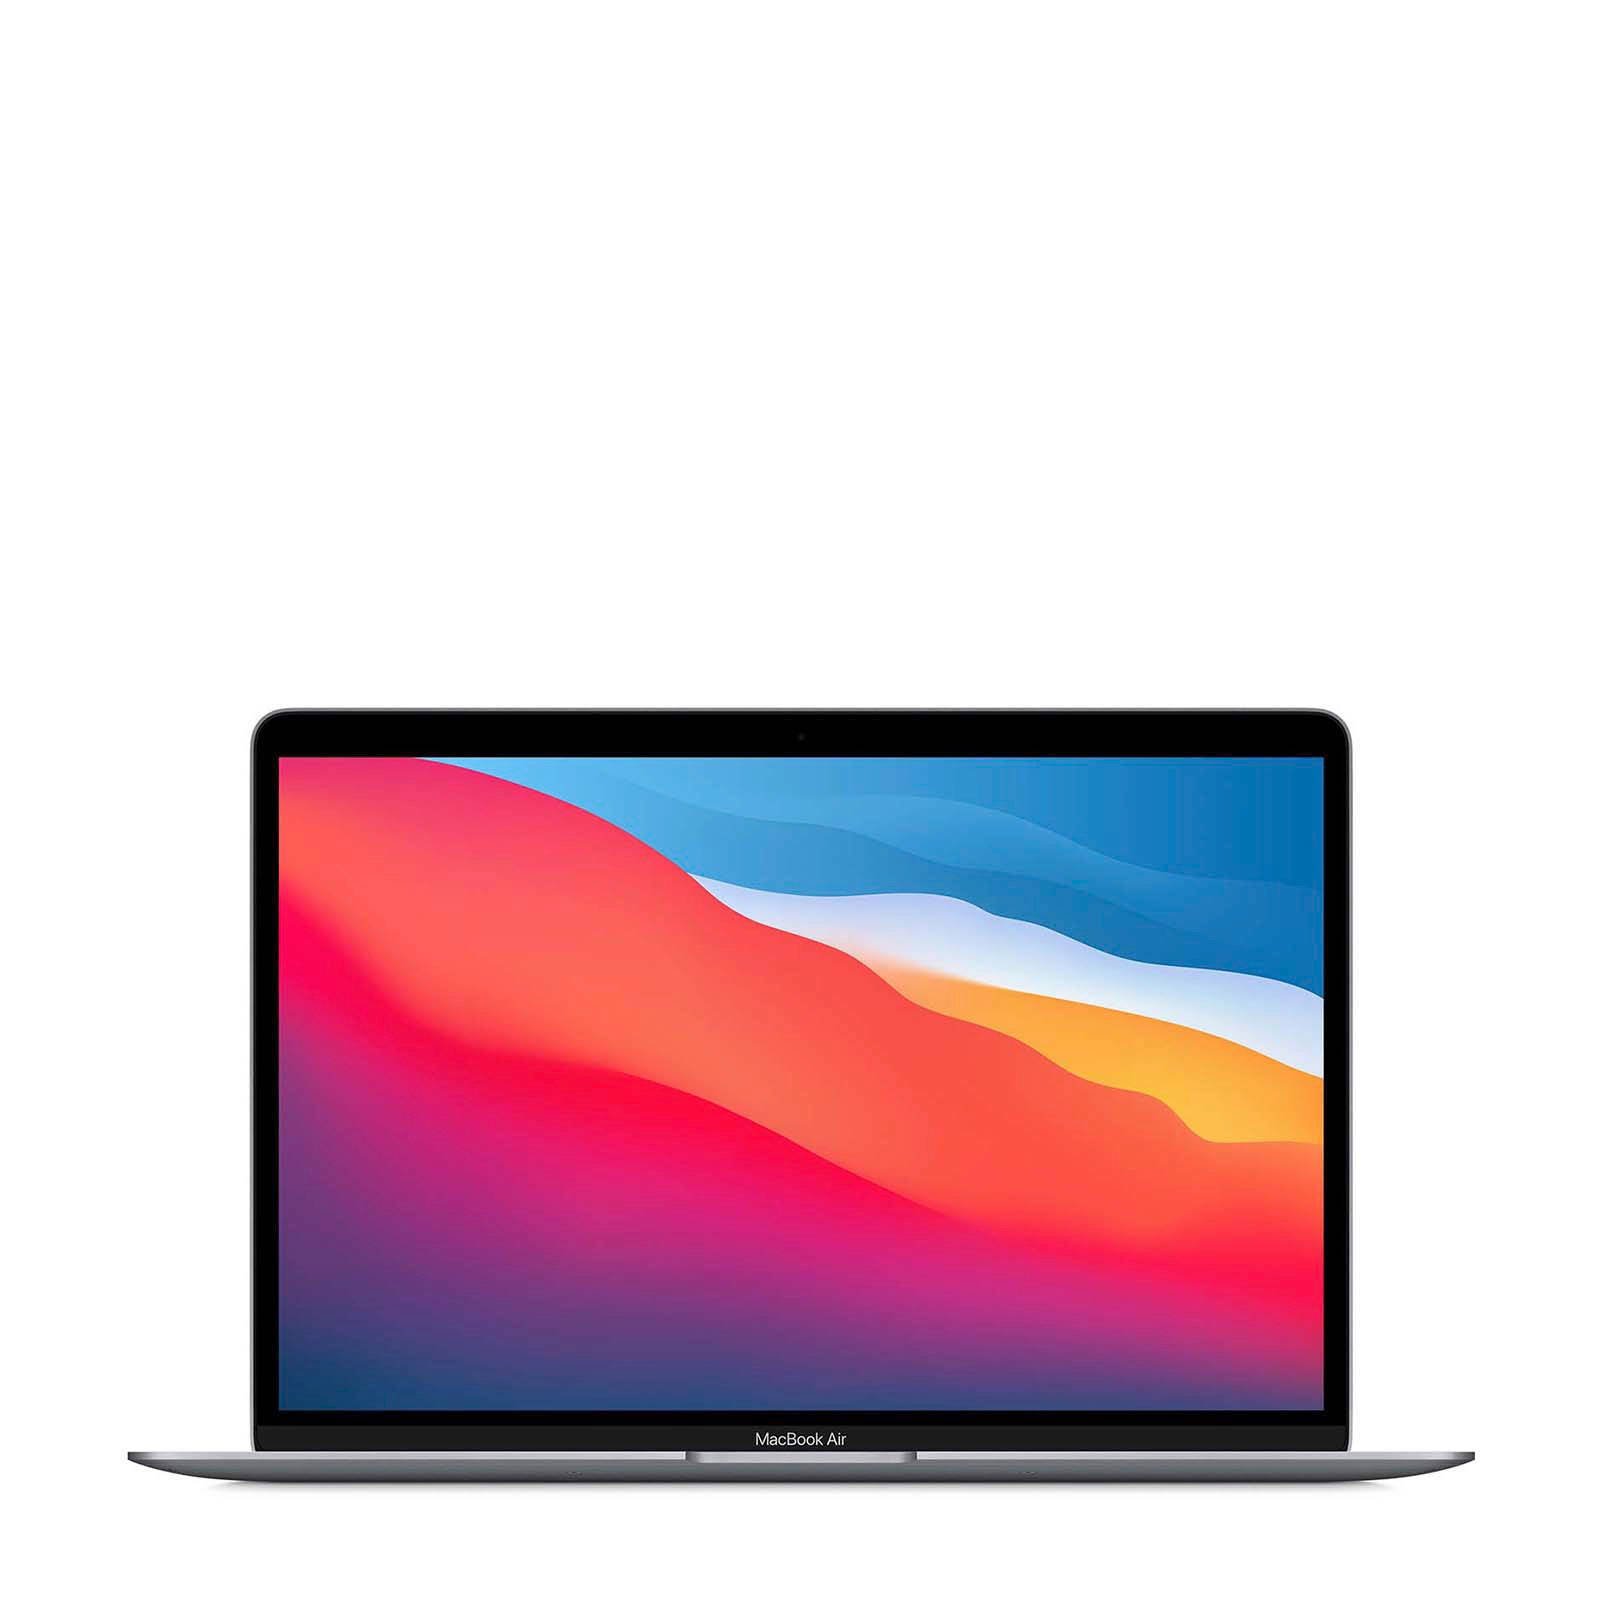 Gezicht omhoog Oceaan Vol Zeer nette MacBook Air (2020)- Apple M1 chip - 8GB - 256gb SSD - Spacegrey-  1 jaar garantie - Proresell